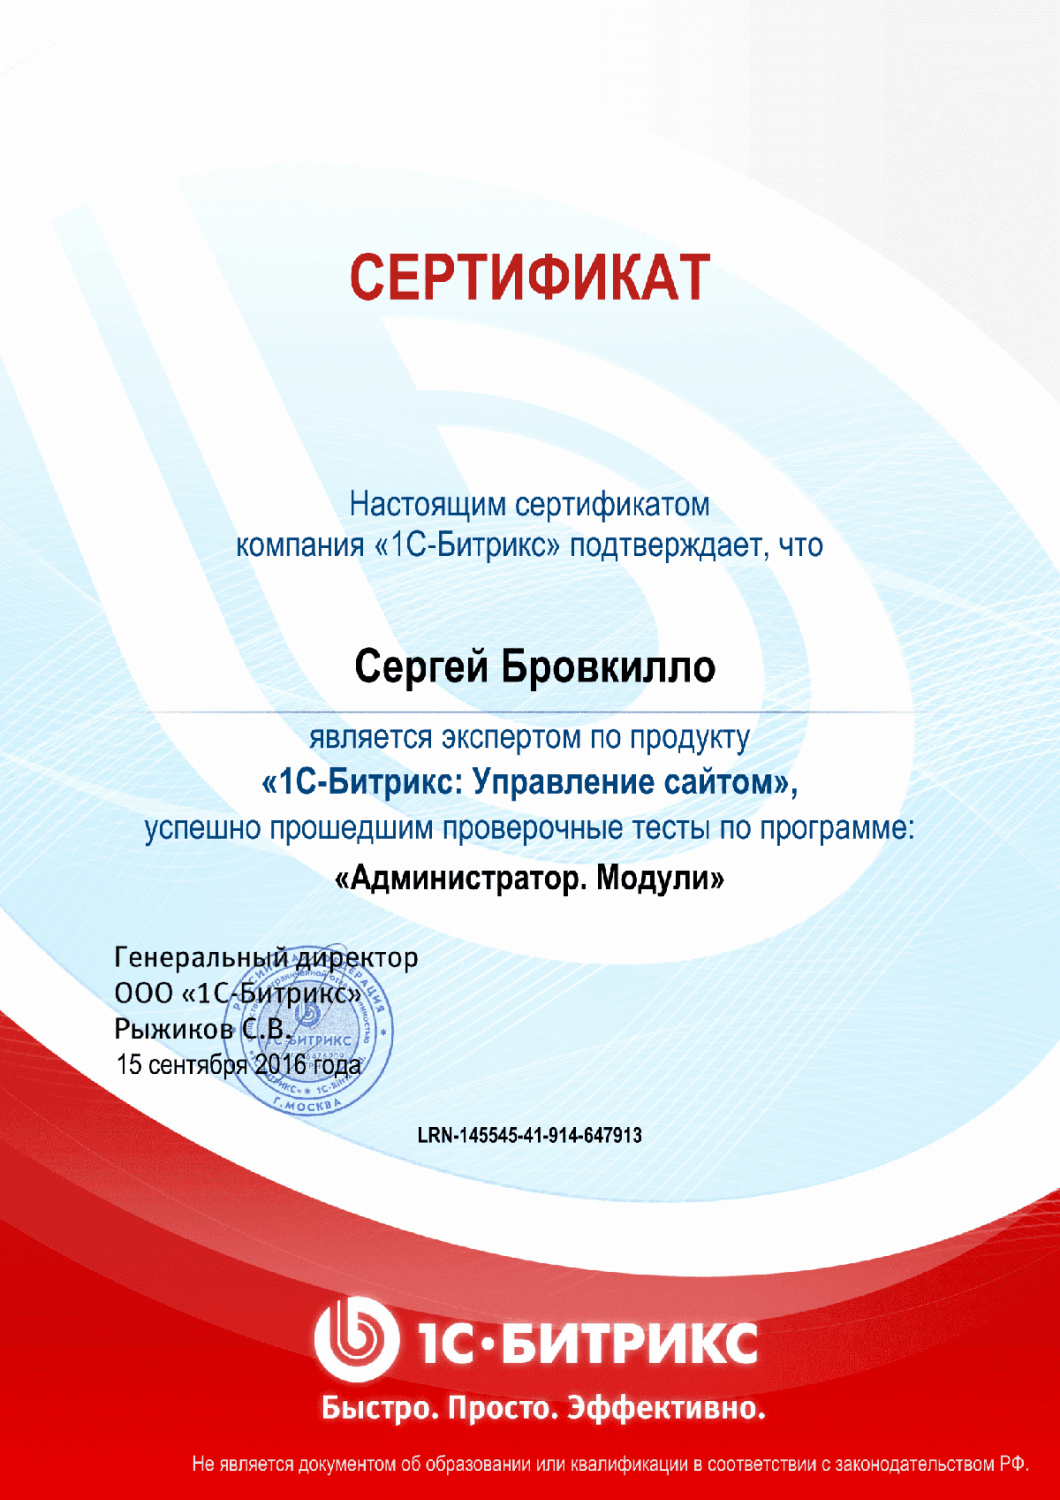 Сертификат эксперта по программе "Администратор. Модули" в Калининграда